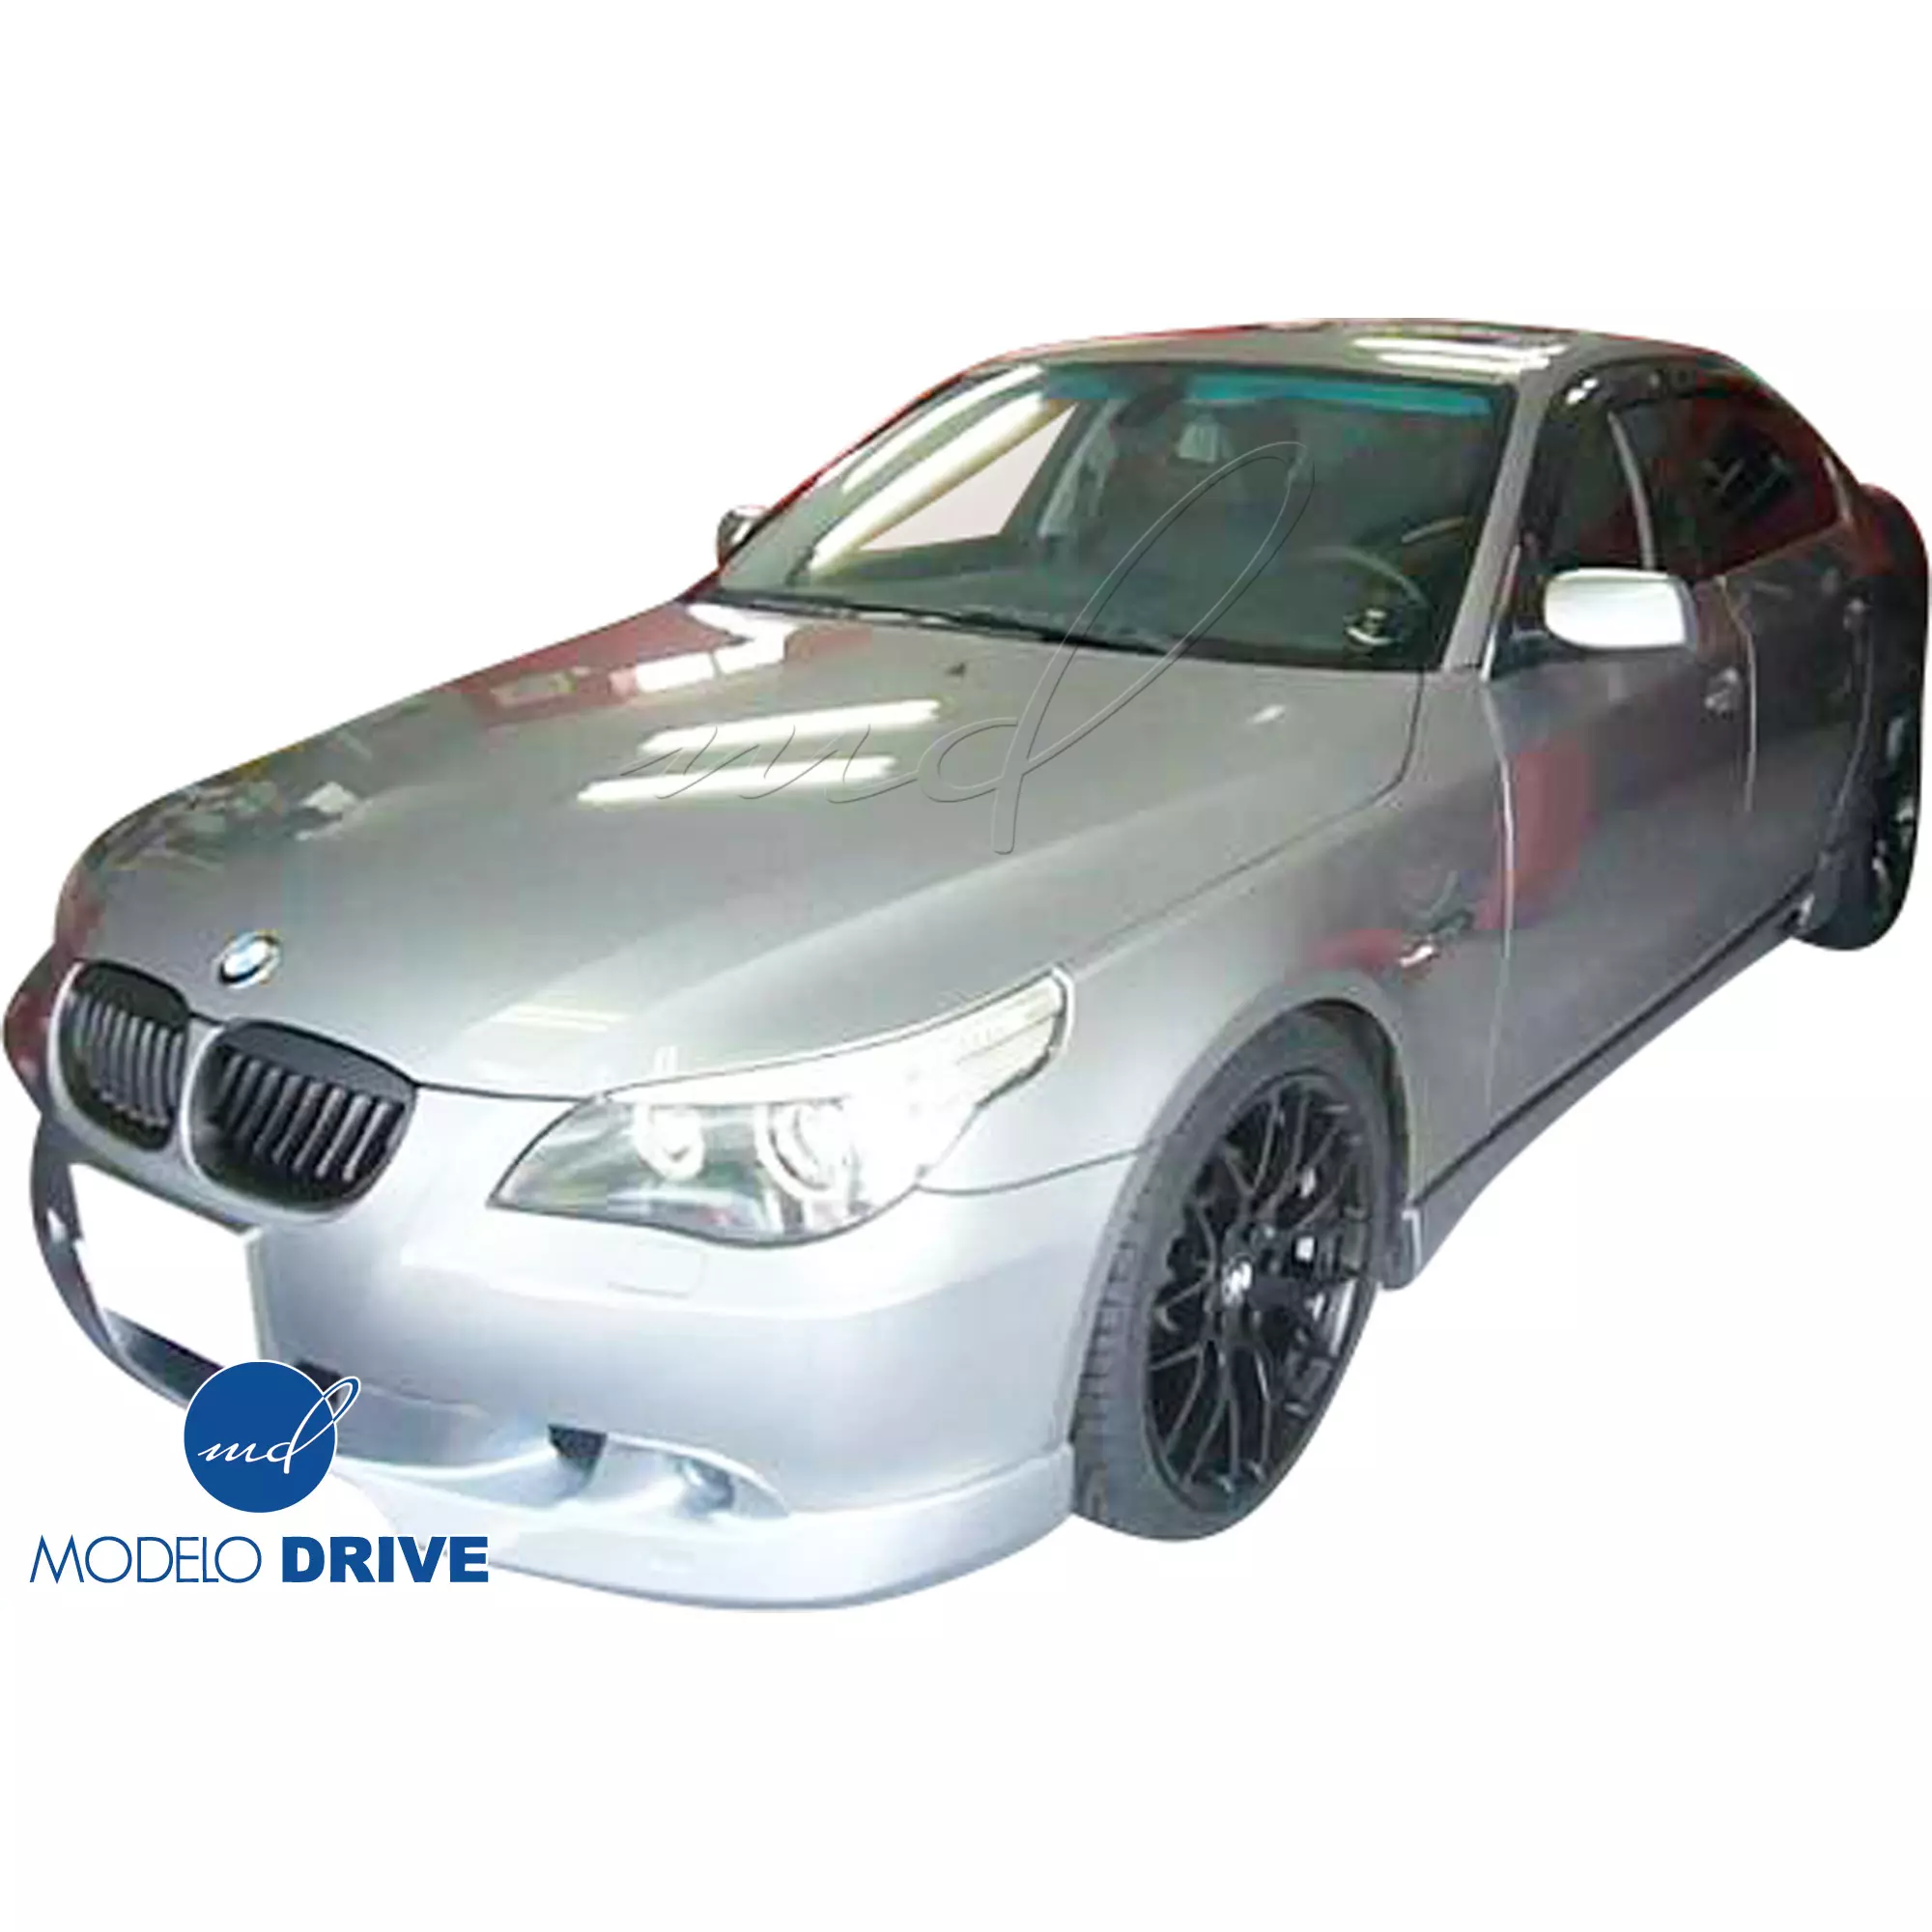 ModeloDrive FRP ASCH Body Kit 4pc > BMW 5-Series E60 2004-2010 > 4dr - Image 9